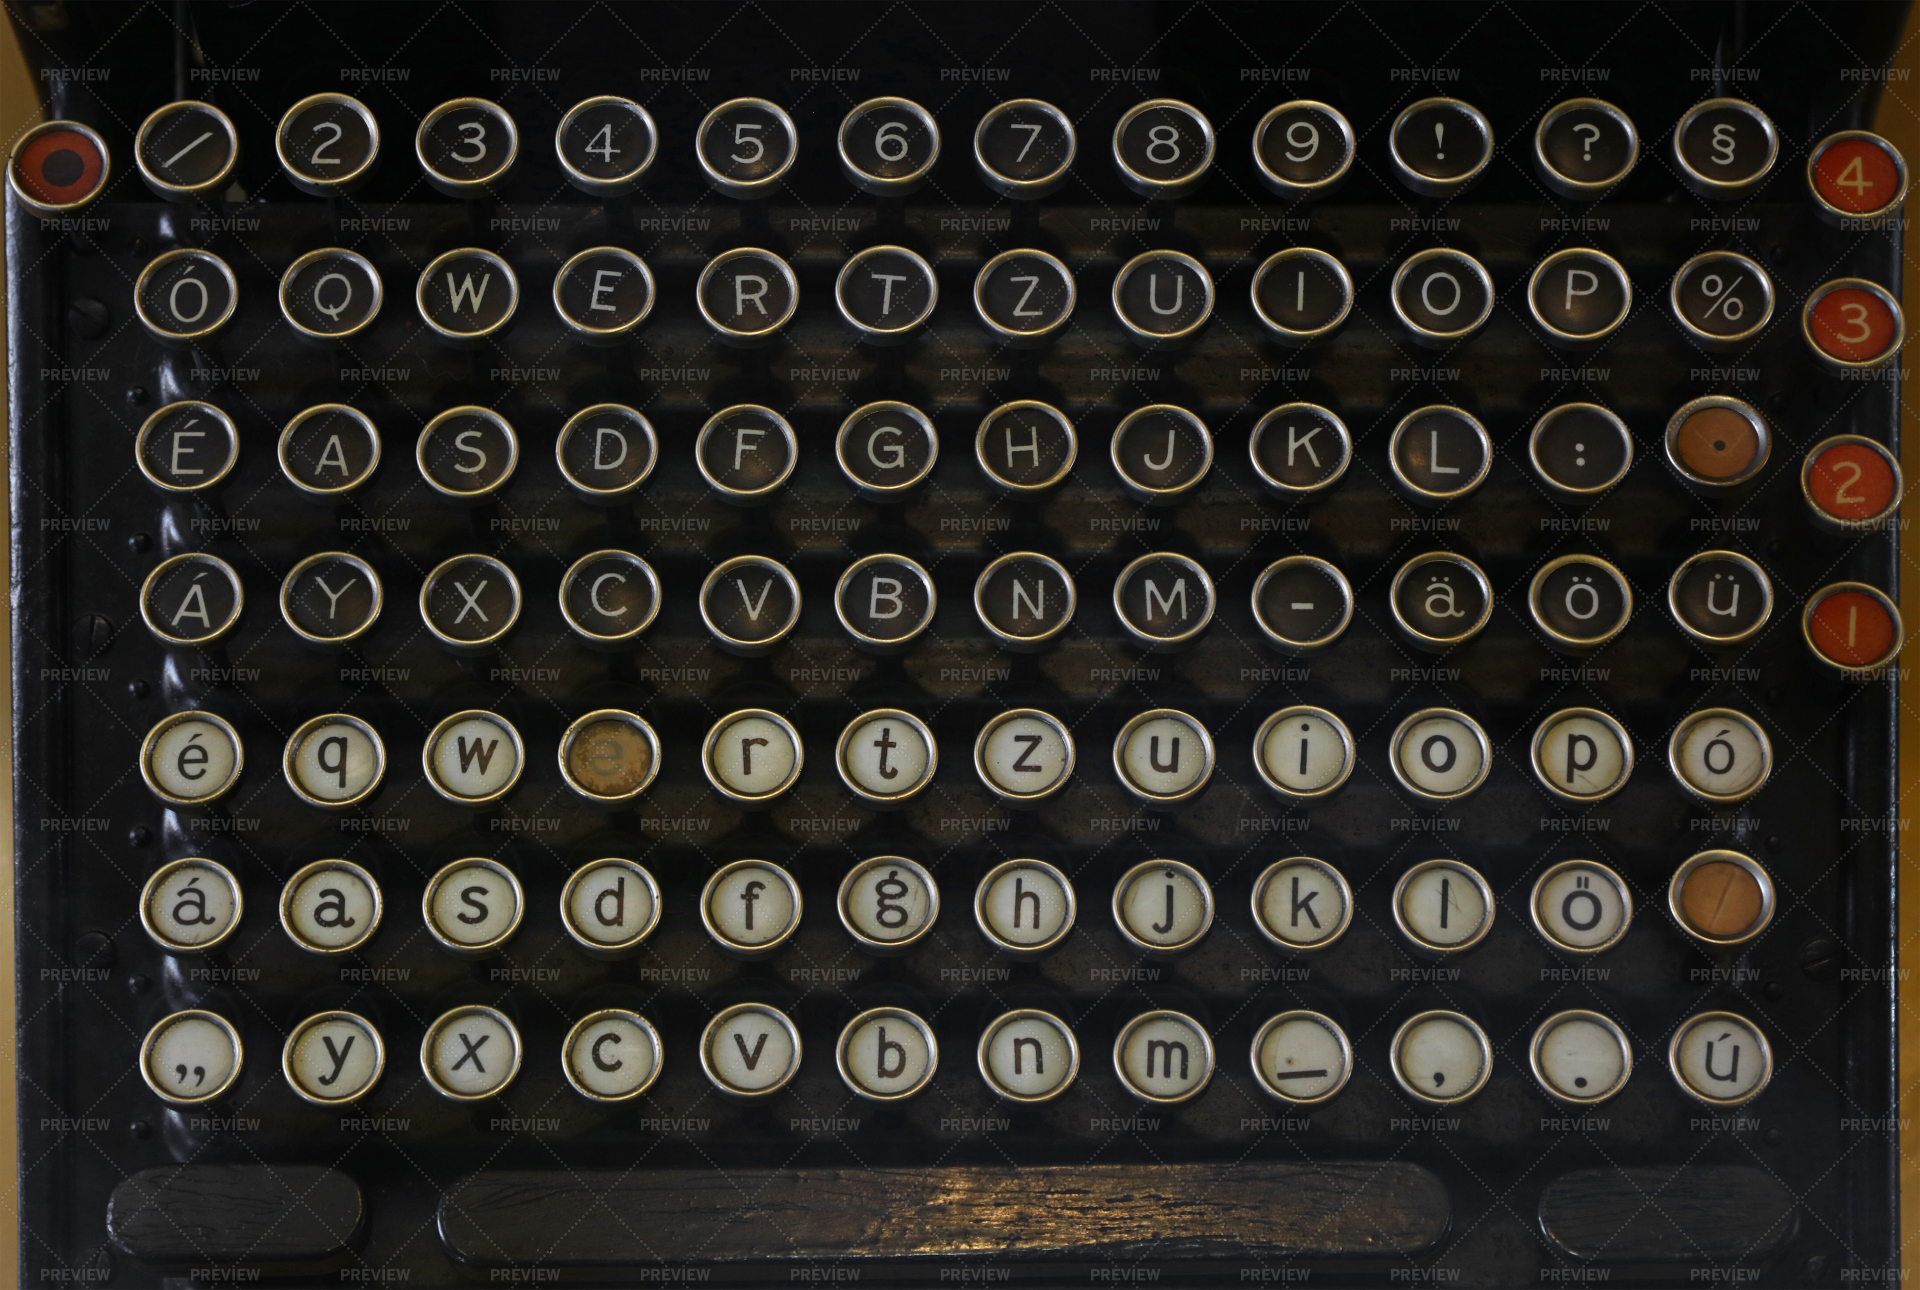 retro typewriter computer keyboard